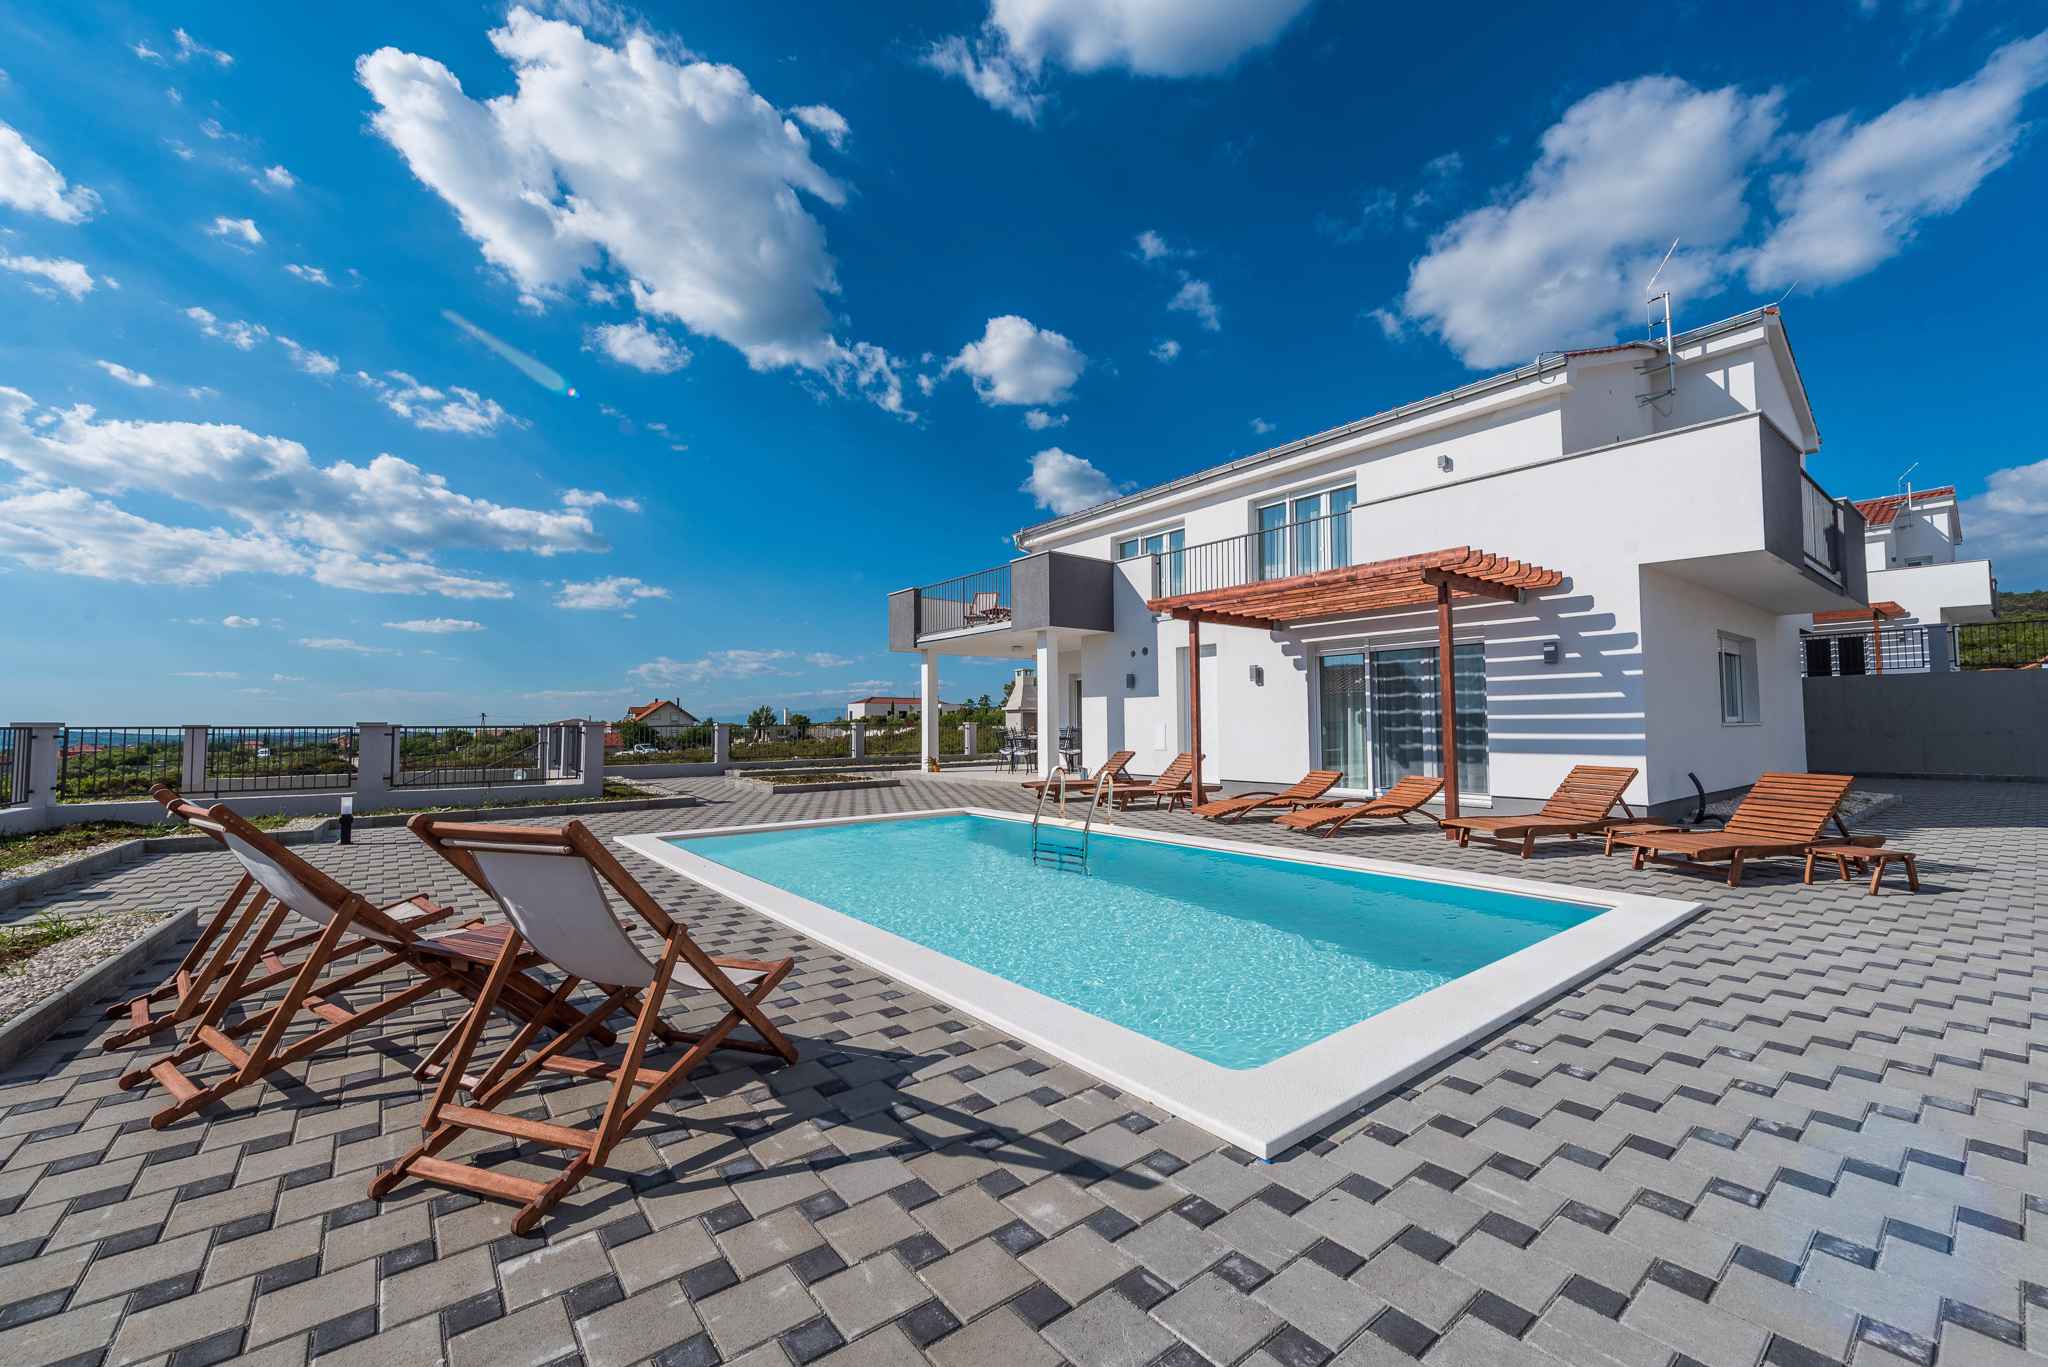 Villa mit Pool Ferienhaus in Dalmatien